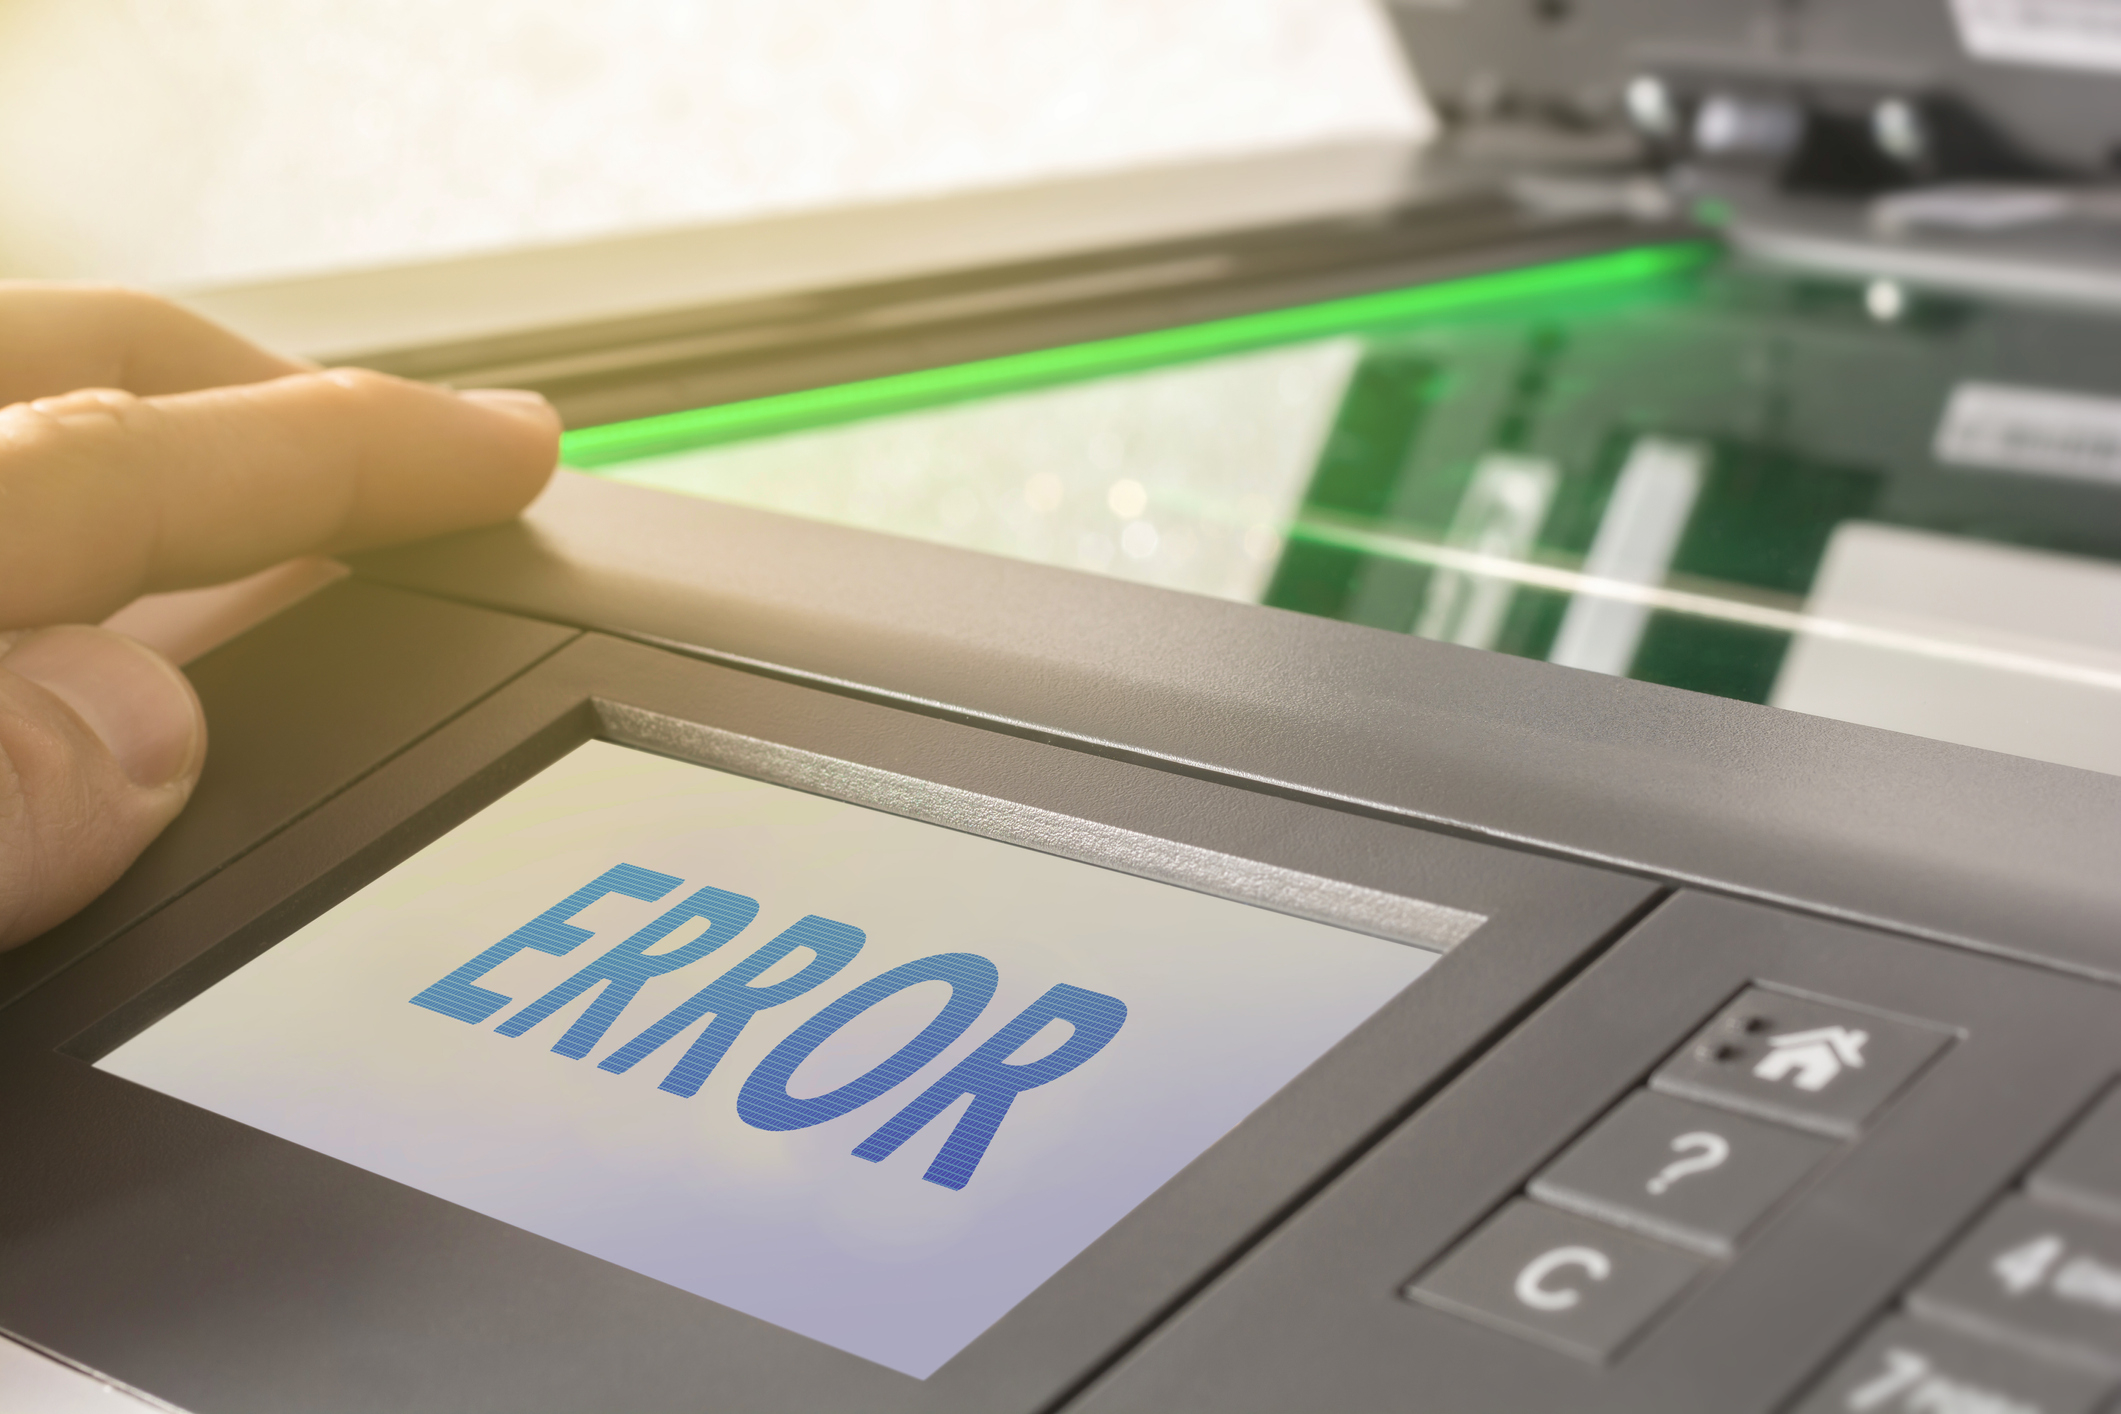 An error message on a printer